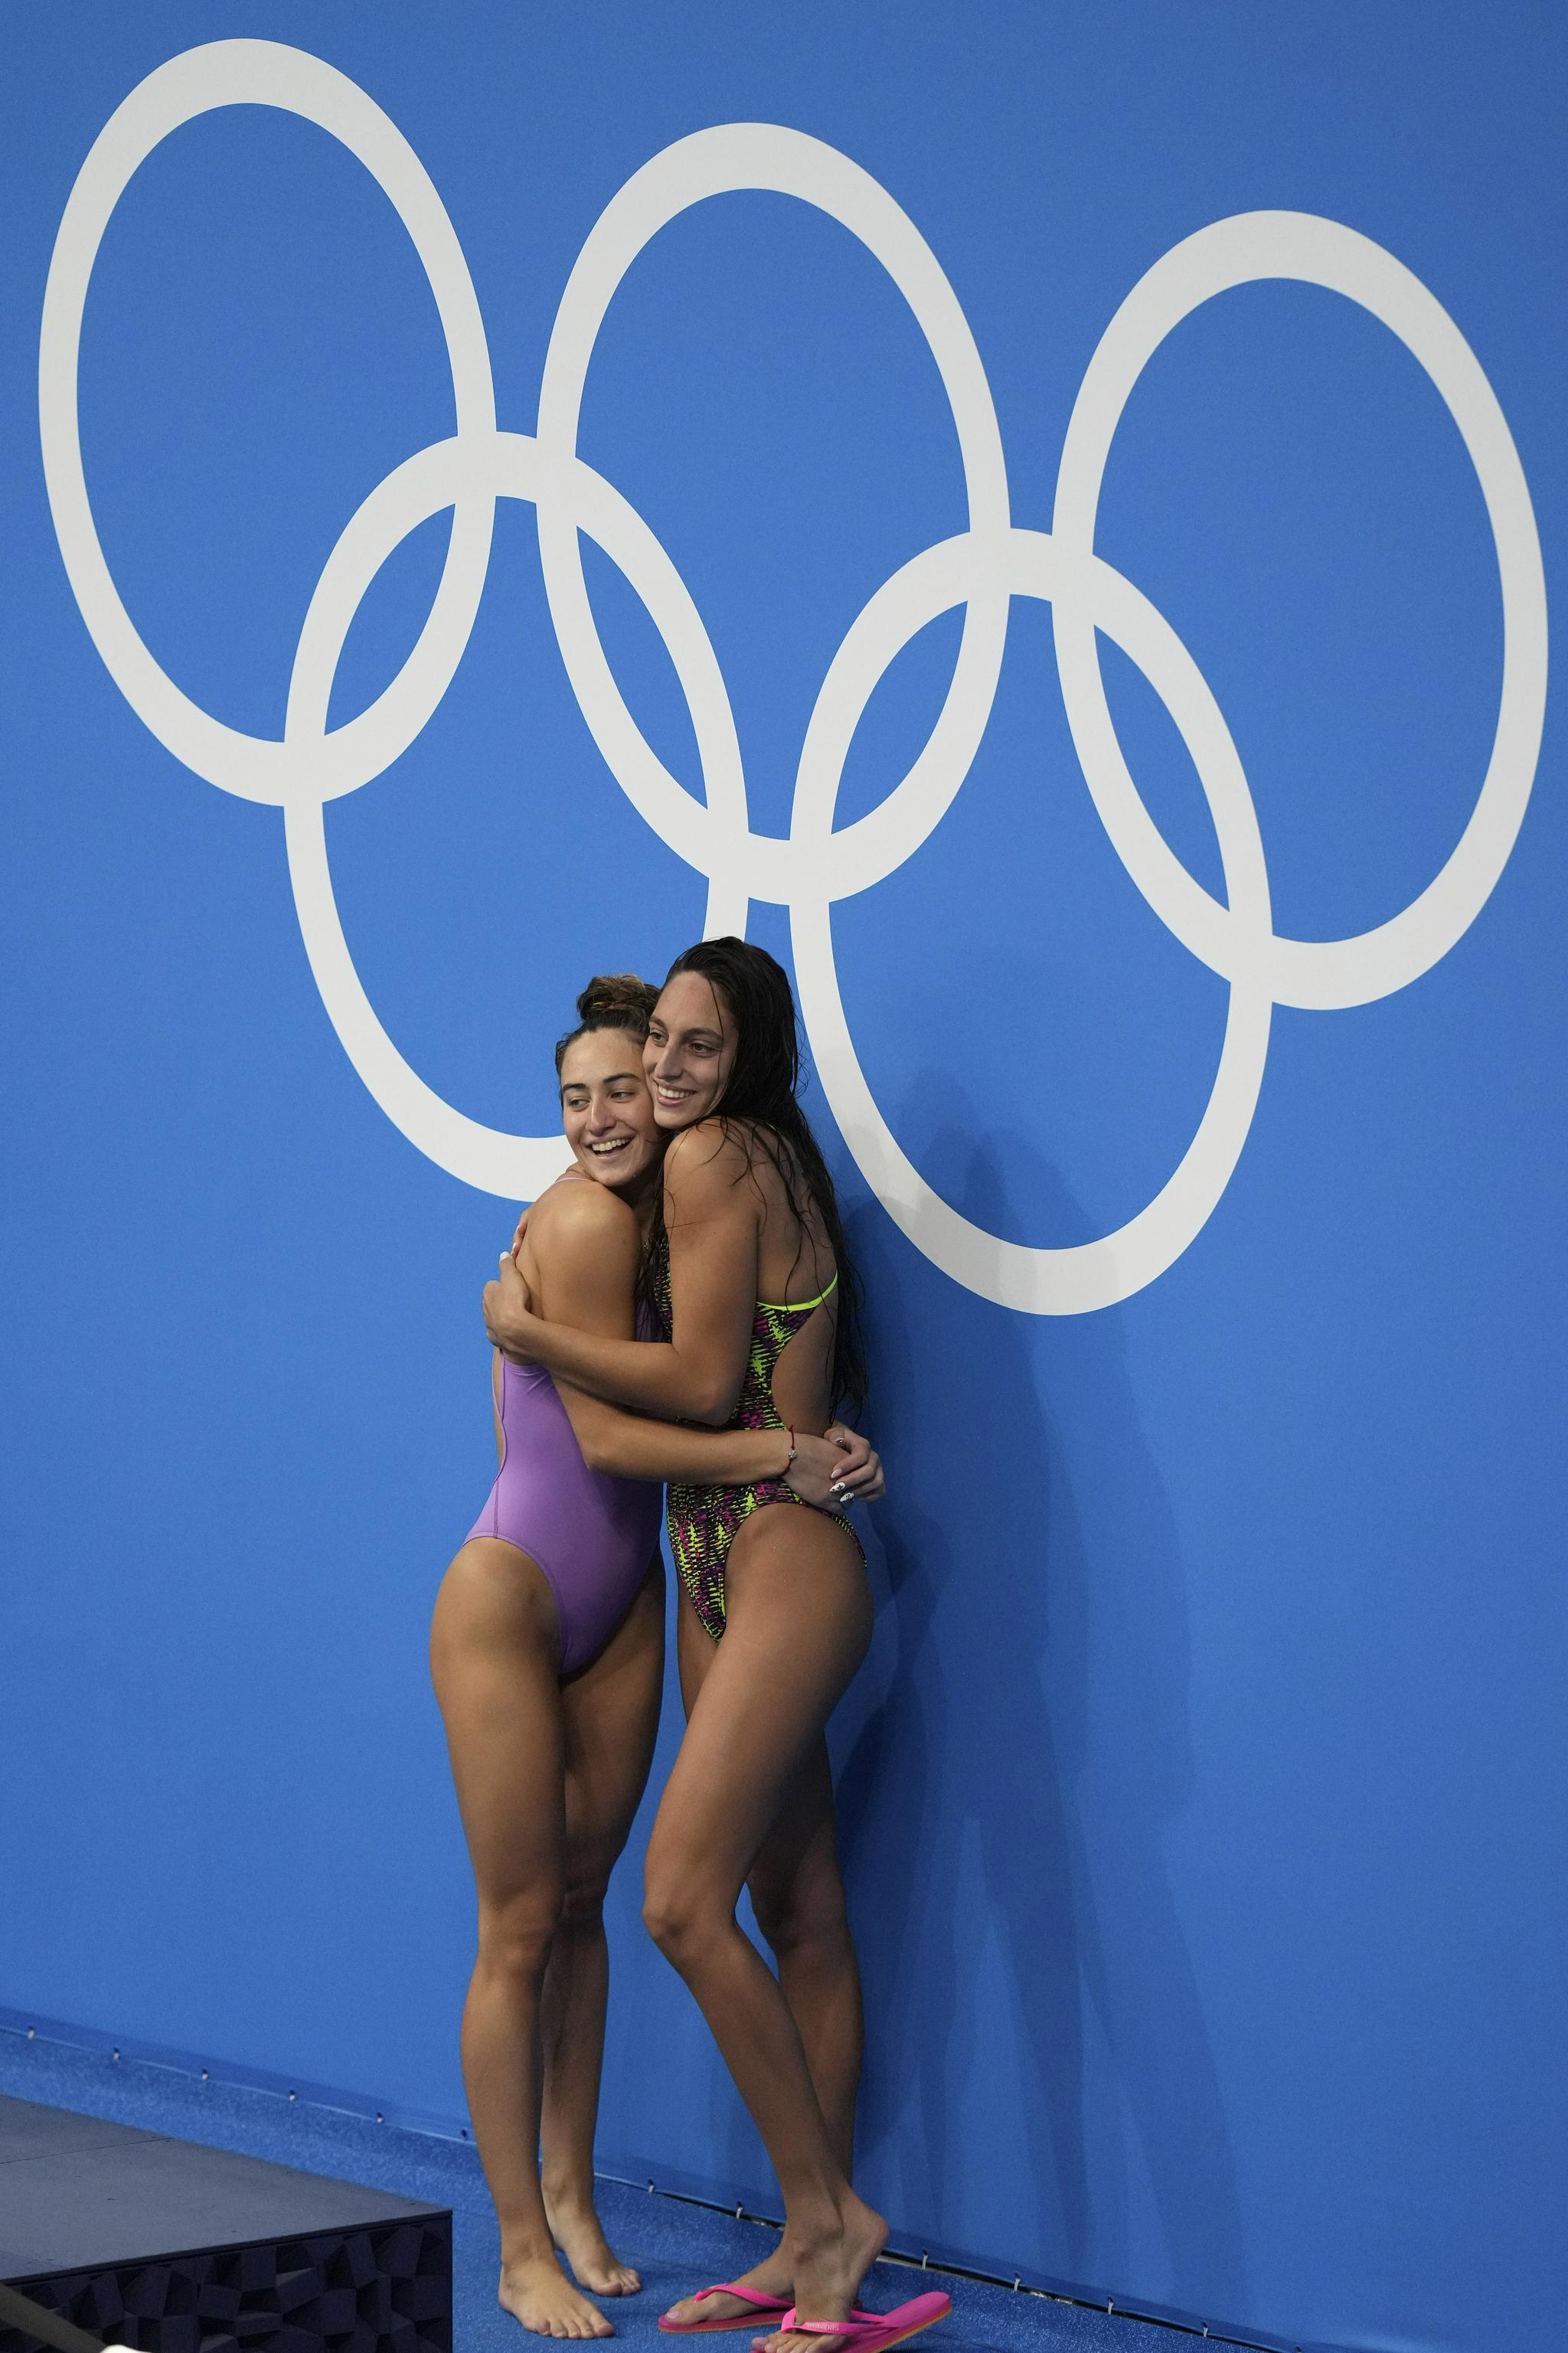 互相拥抱的奥运选手。